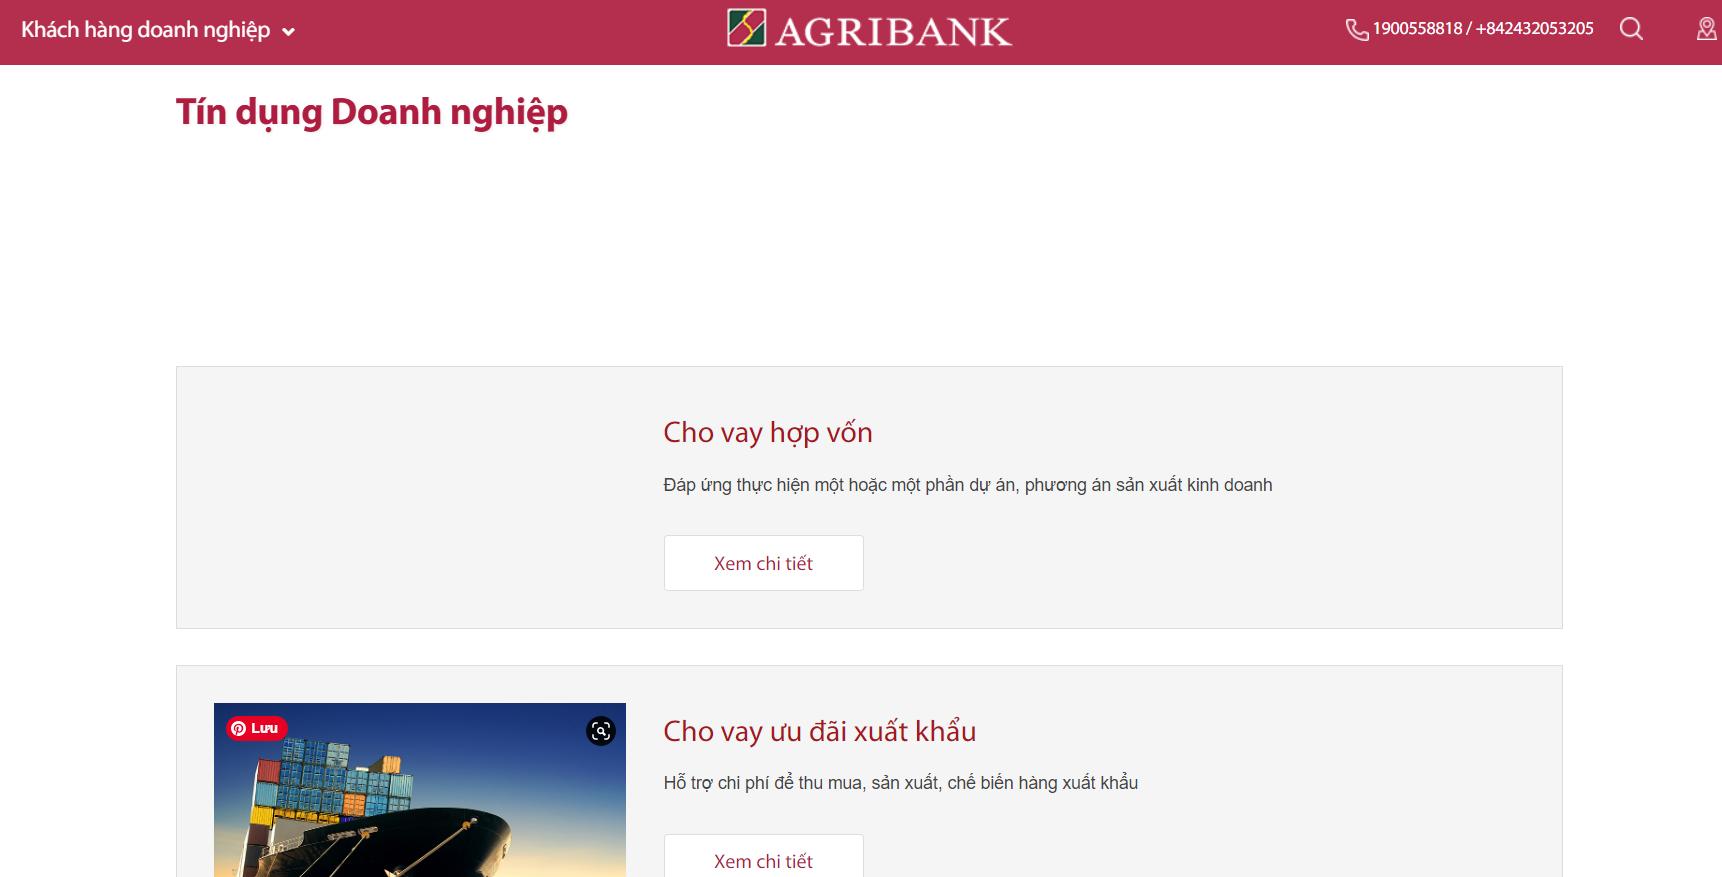 Ngân hàng Agribank có rất nhiều ưu đãi hấp dẫn với tín dụng doanh nghiệp